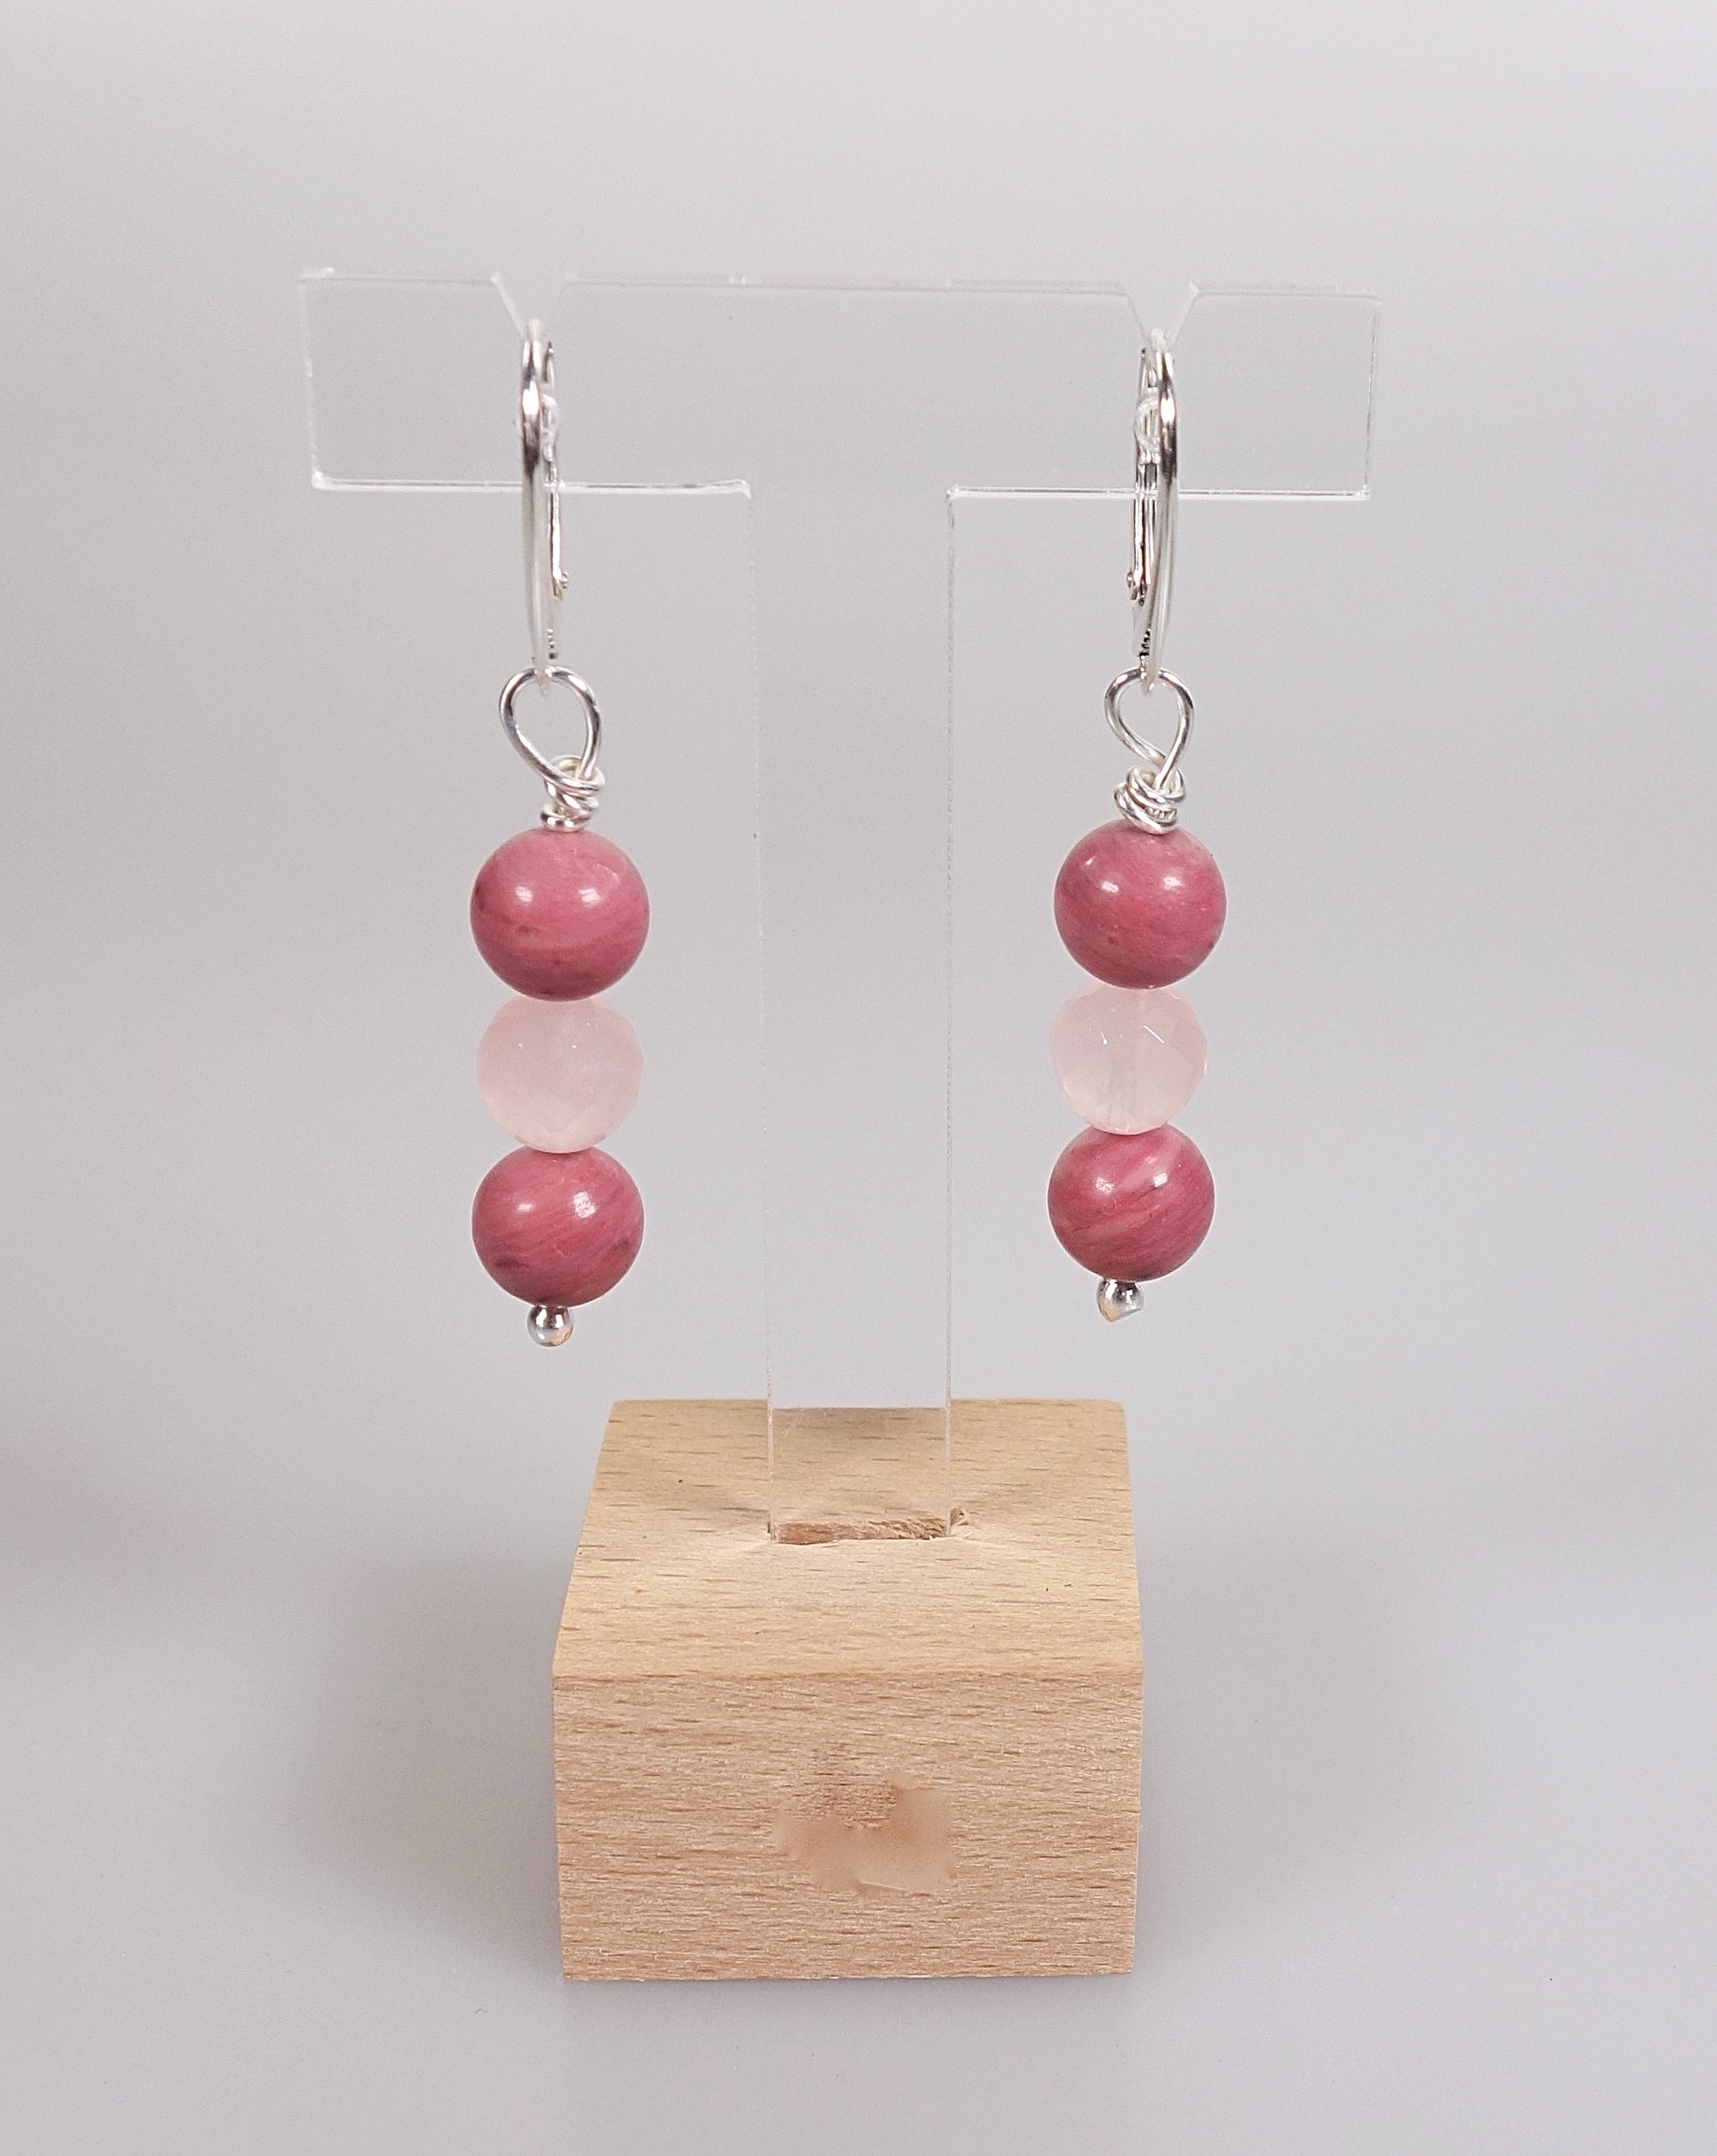 Boucles doreilles Simplissimes rhodonite et quartz rose. Photo sur présentoir, sur fond blanc, vue de face.